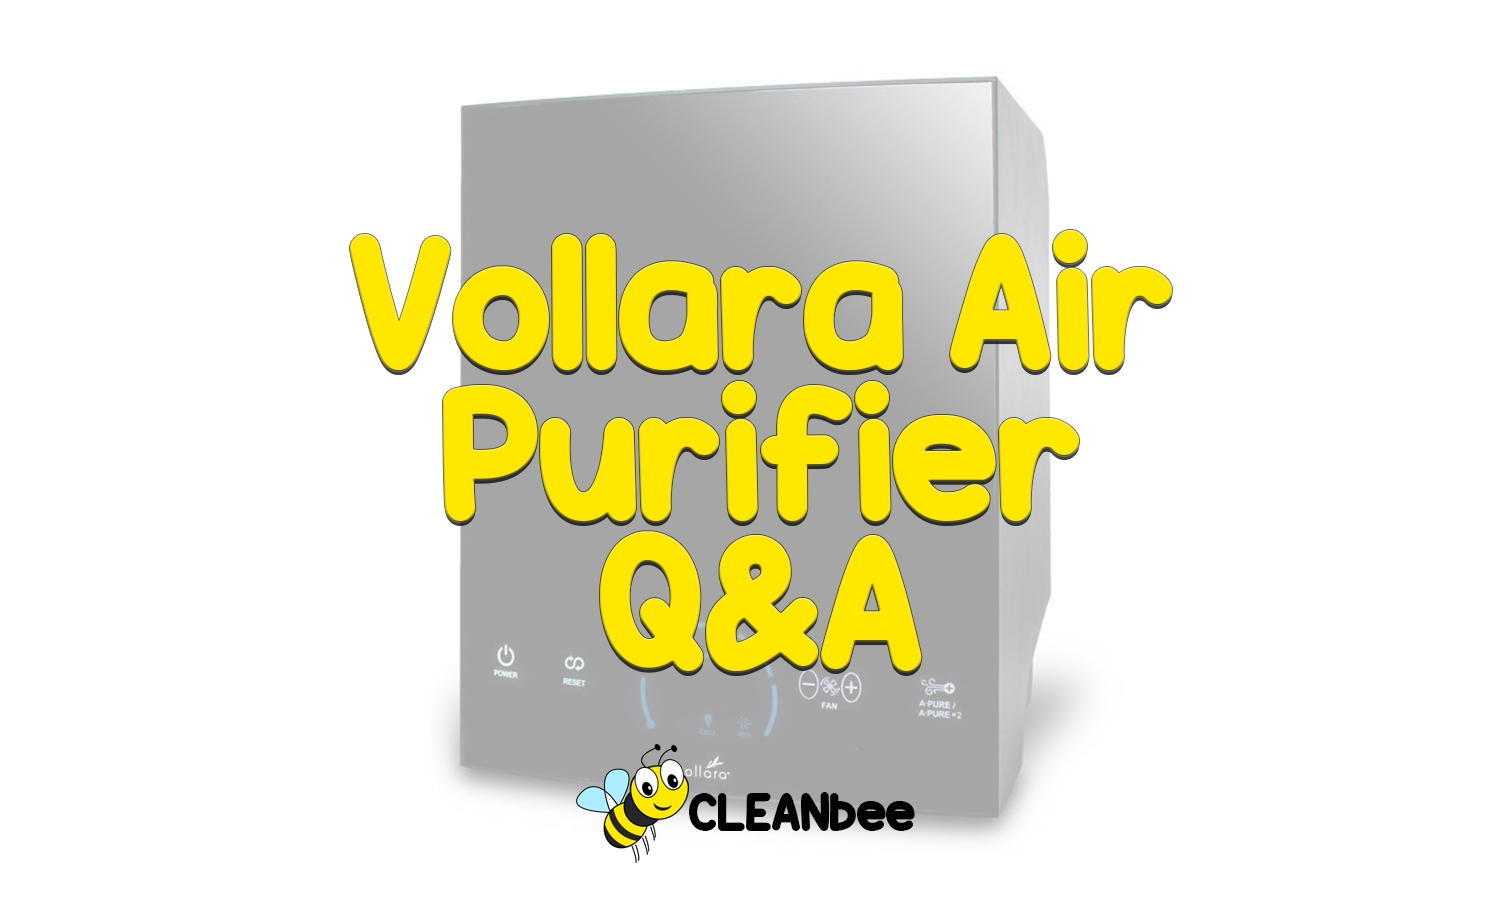 Vollara Air Purifier Q&A